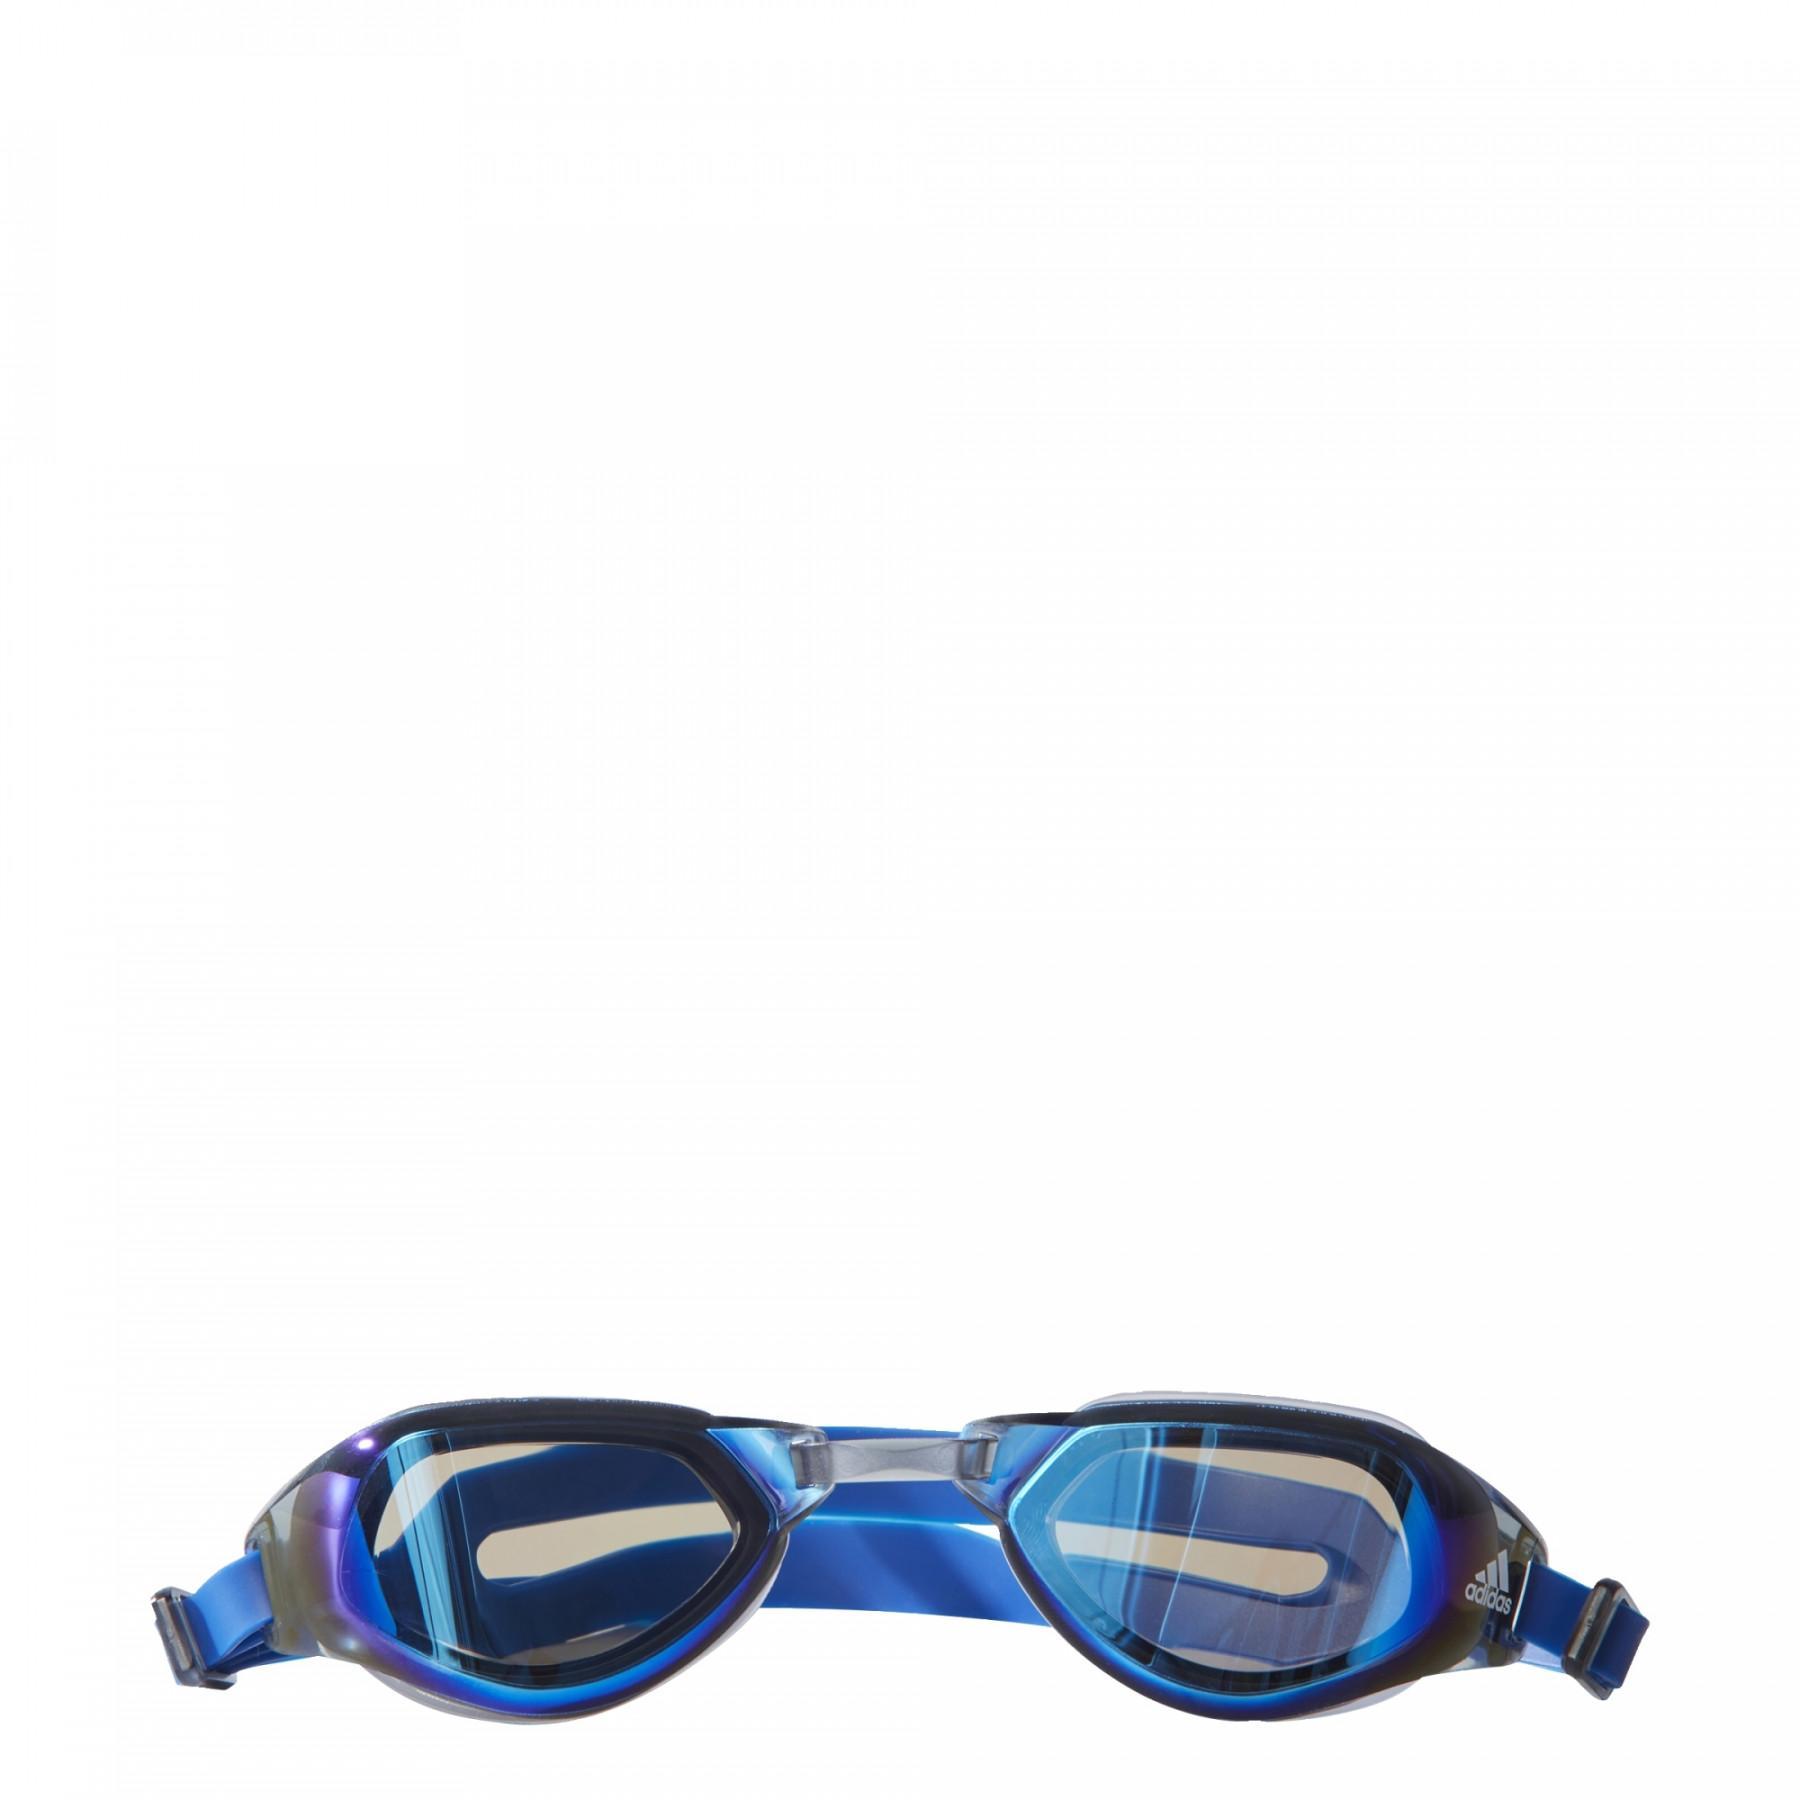 Novela de suspenso conspiración Expansión Gafas de natación adidas Persistar Fit Mirrored - Gafas de natación -  Natación - Actividades